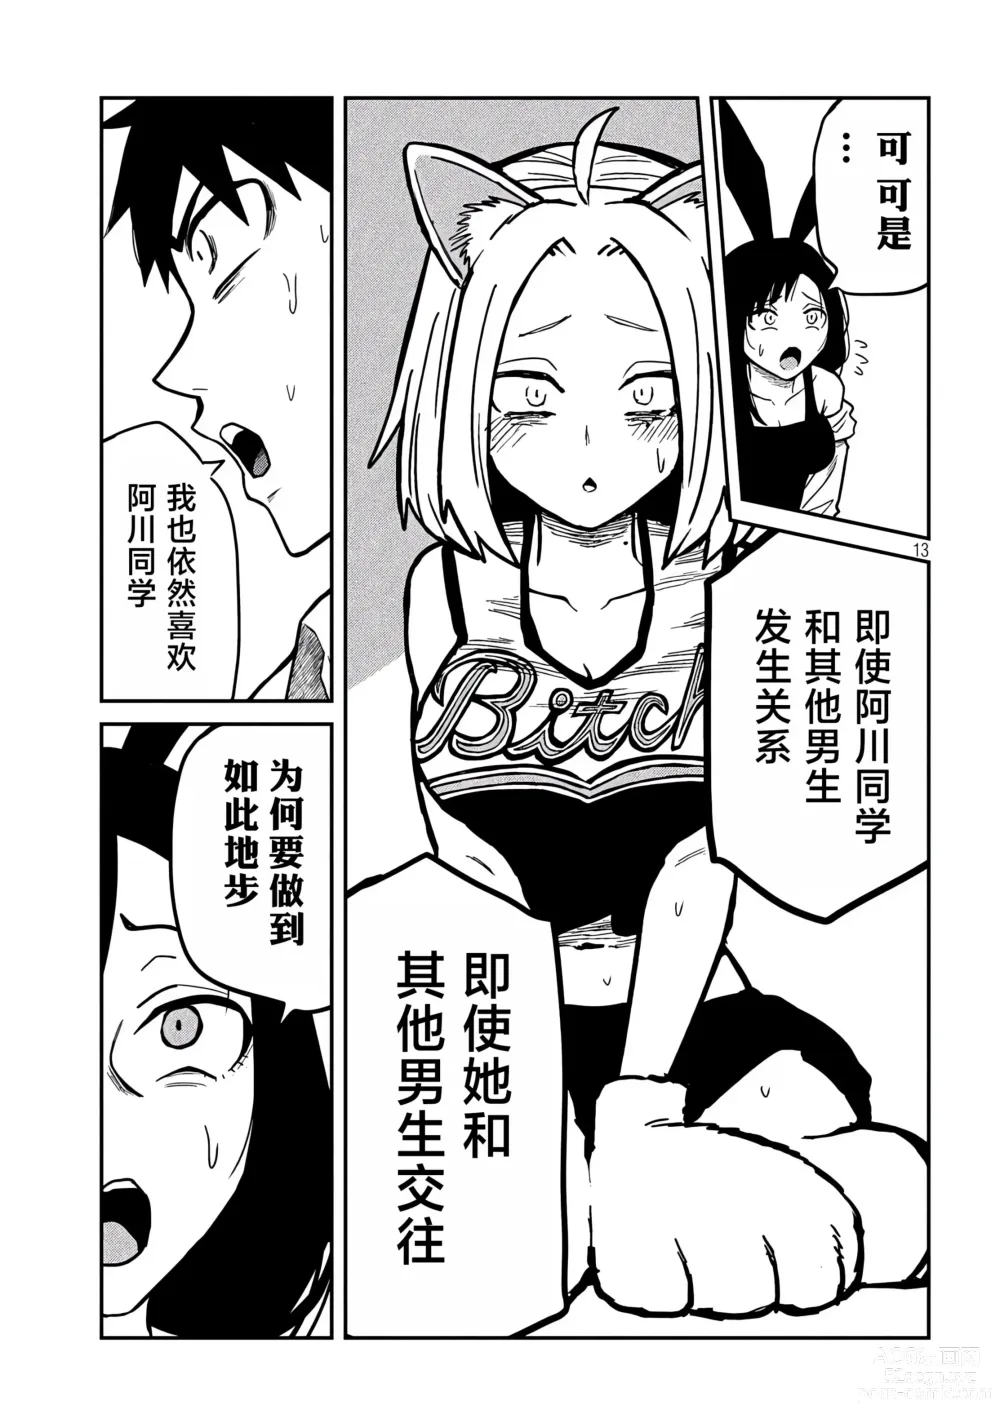 Page 533 of manga 喜欢来者不拒的你